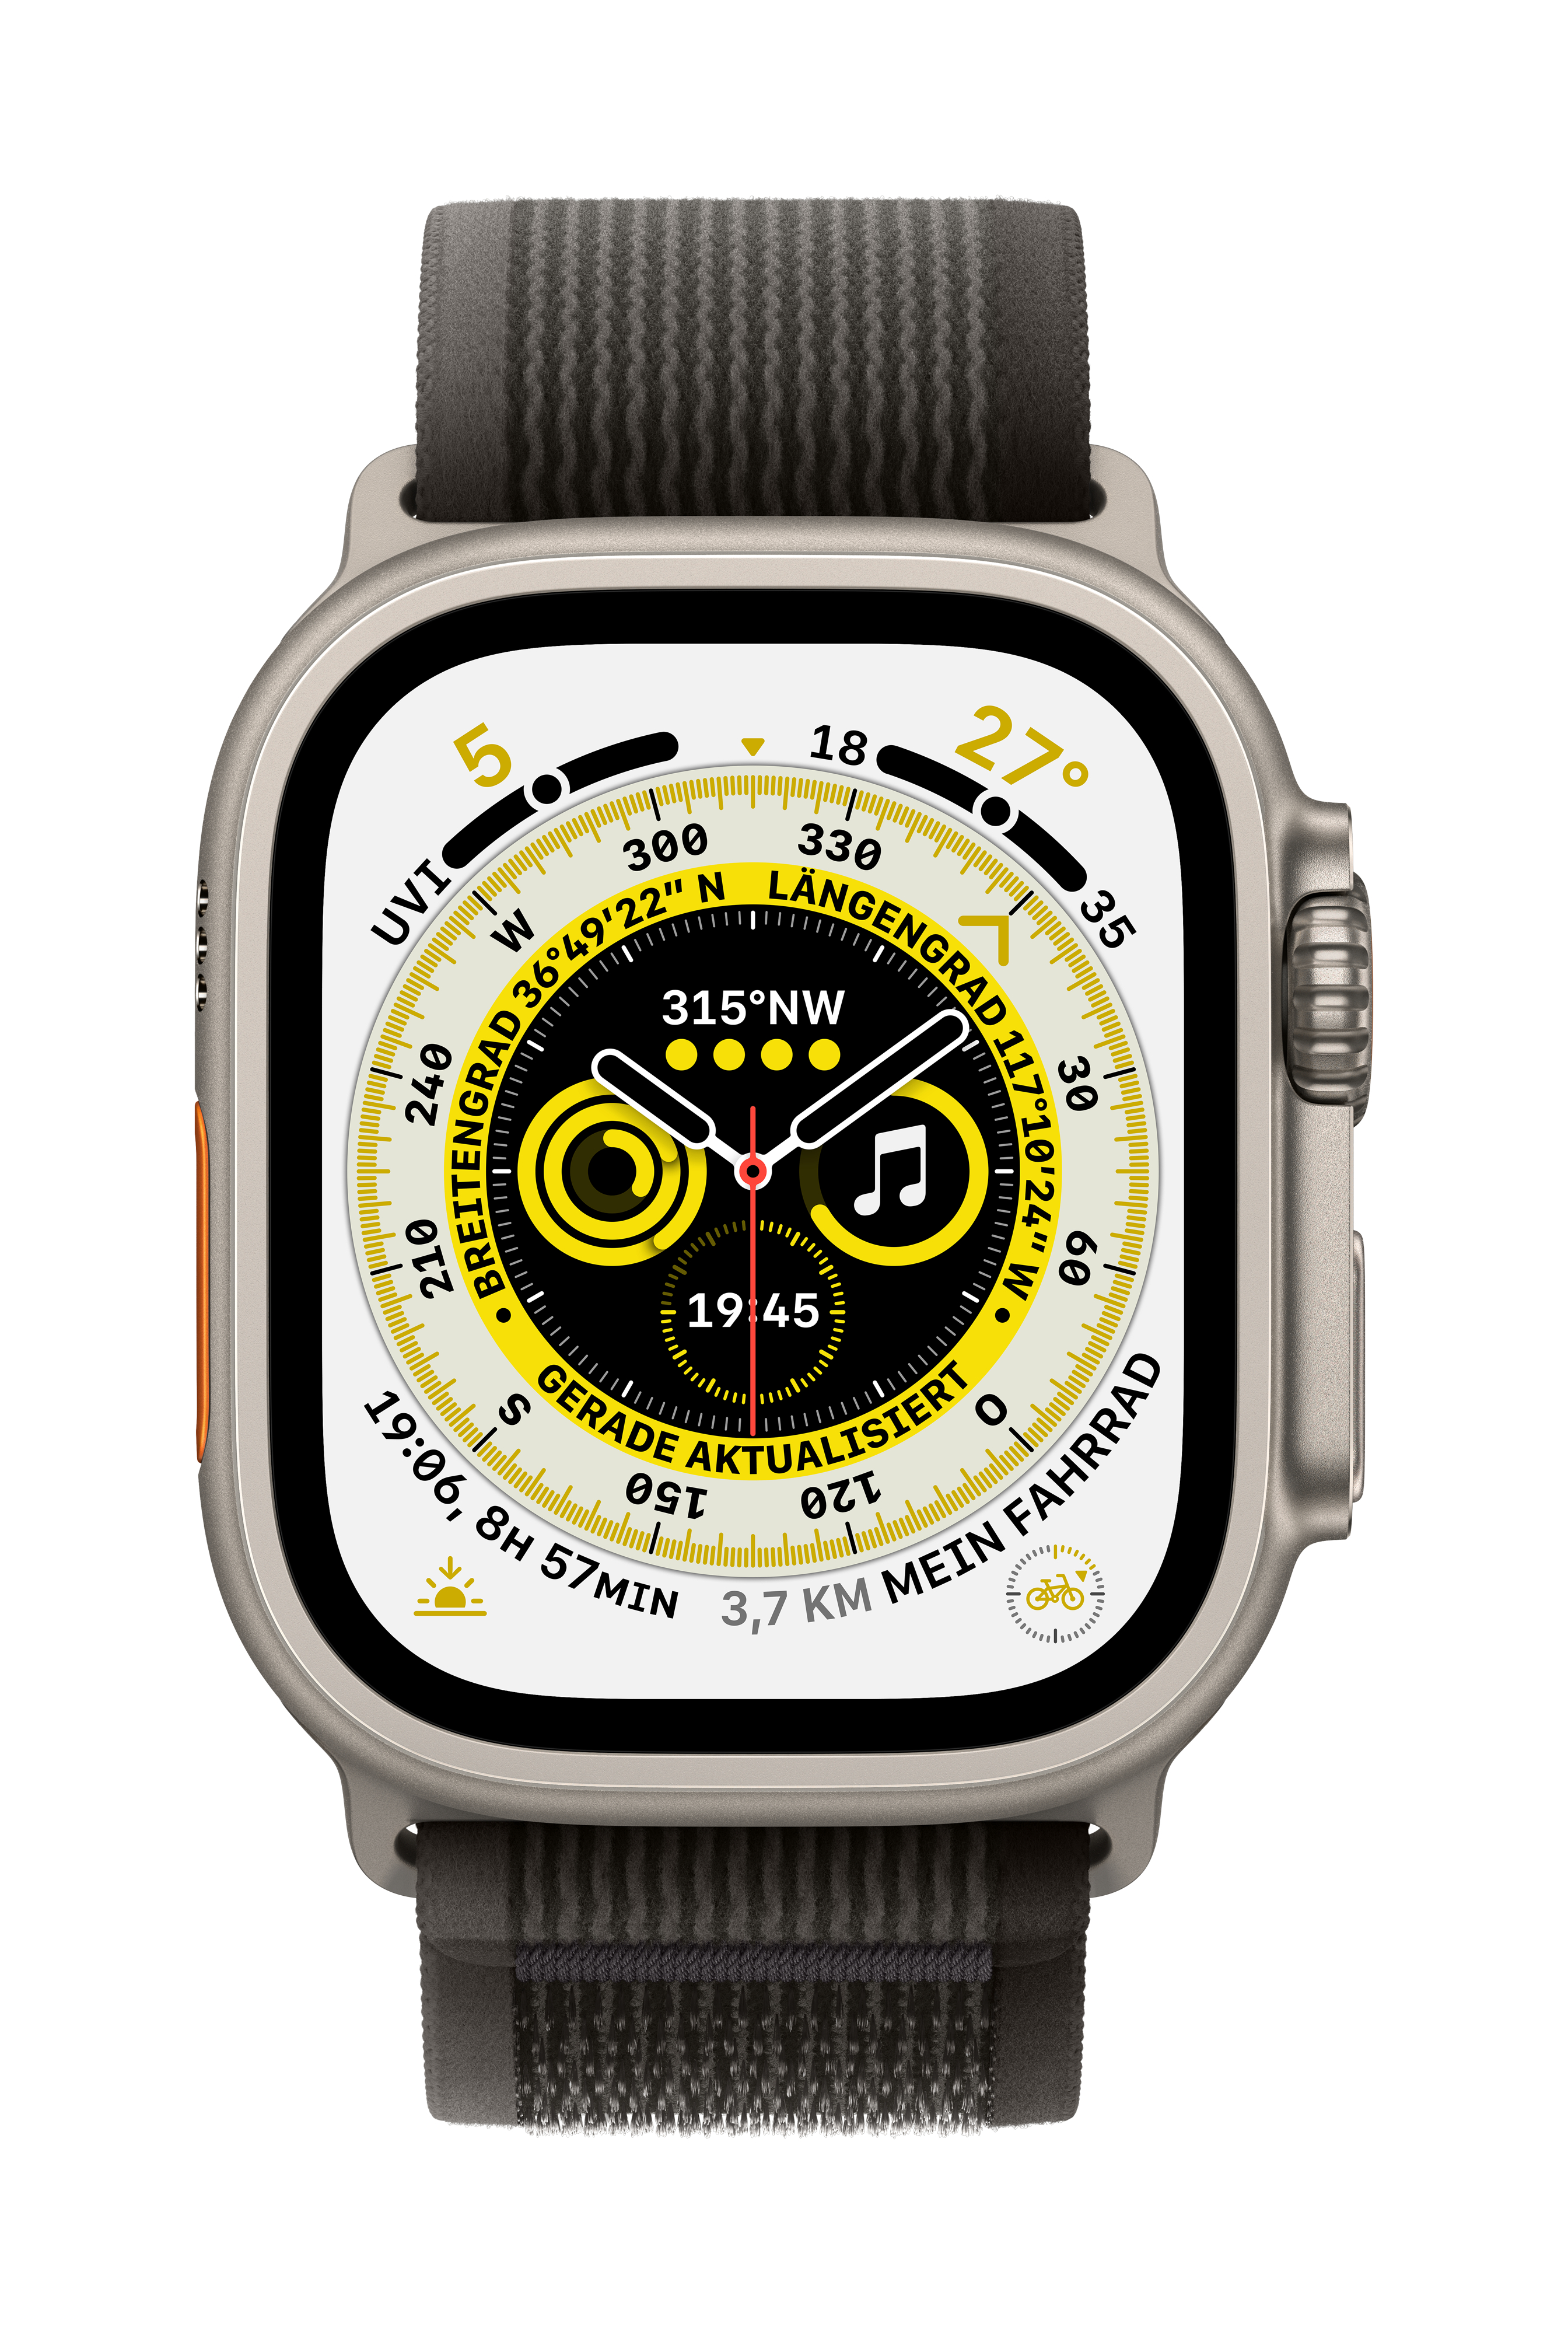 TIT Nylon/Gewebe, Schwarz/Grau APPLE Watch S/M Ultra Smartwatch 130 - TRAIL W 49 Nylon/Gewebe GPS+CEL mm, 180